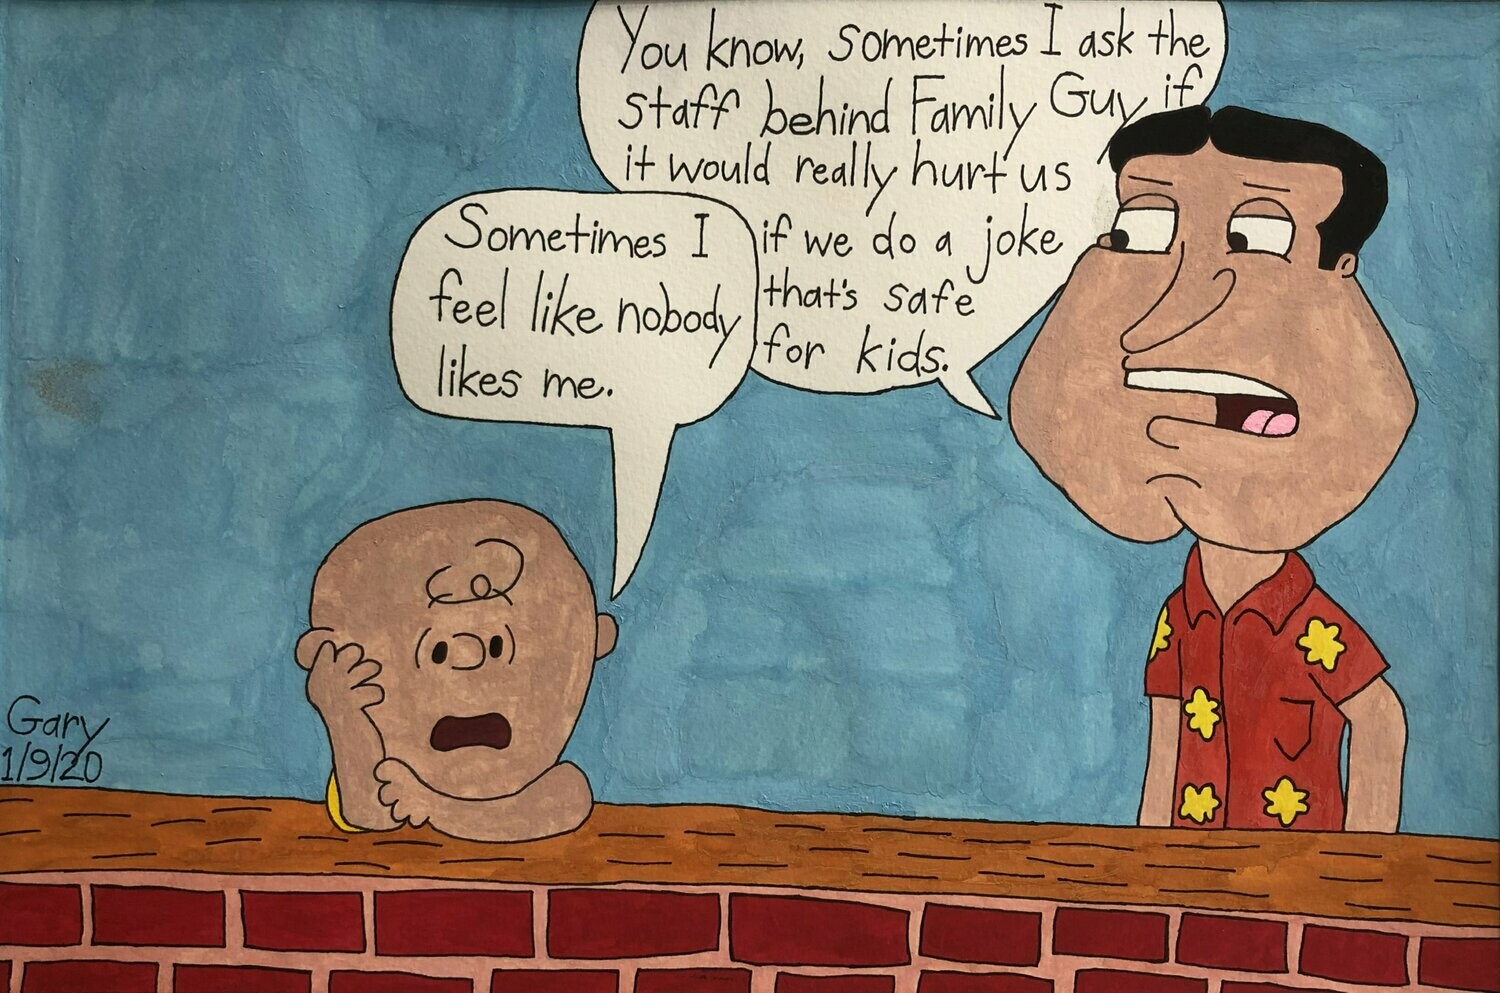 Charlie Brown & Glenn Quagmire Express Their Feelings